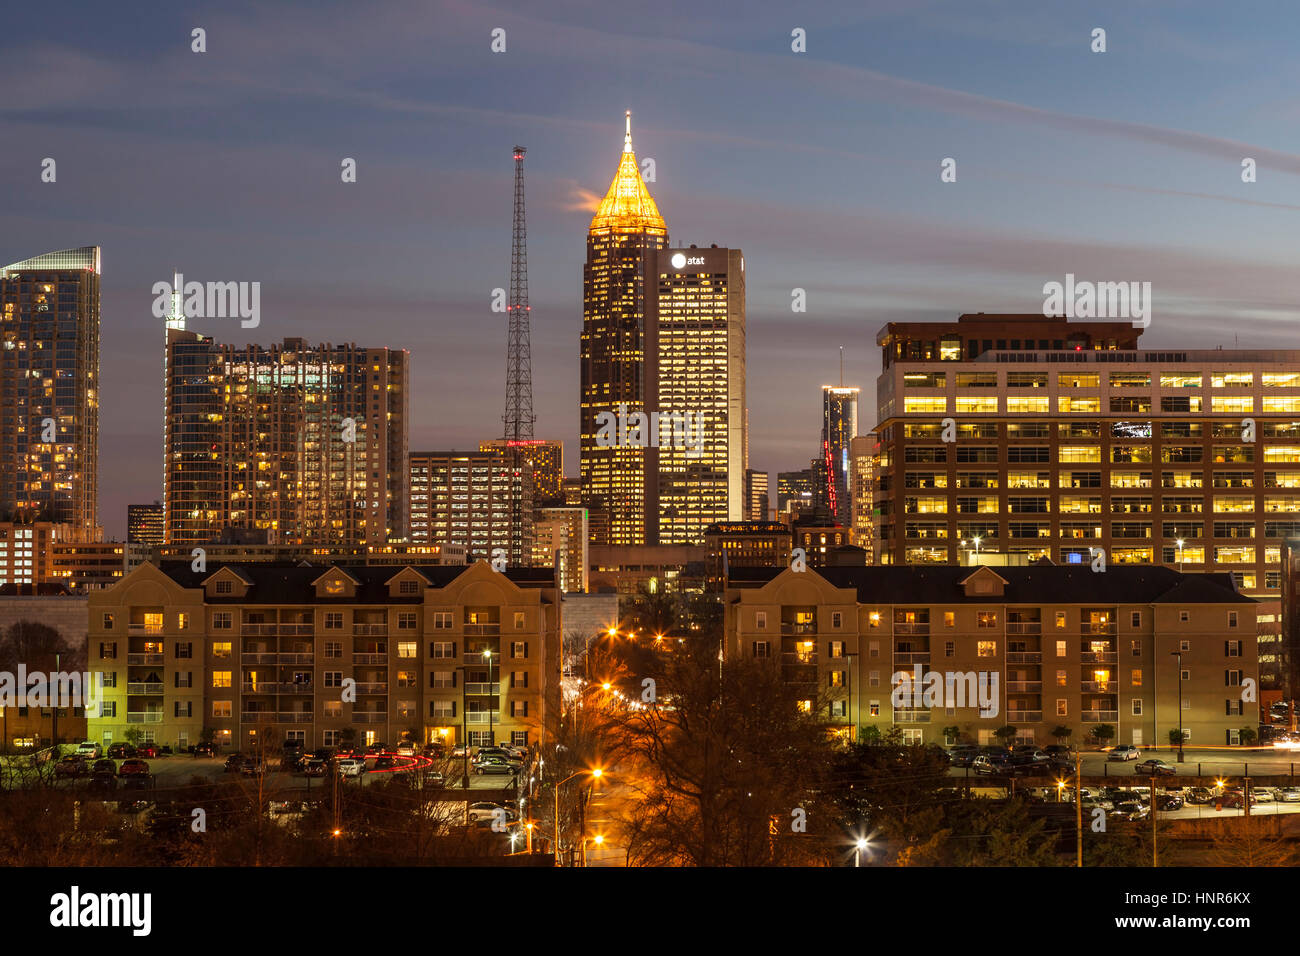 ATLANTA, GÉORGIE - Février 3, 2014 : l'architecture moderne du centre-ville d'Atlanta skyline at Dusk. Banque D'Images